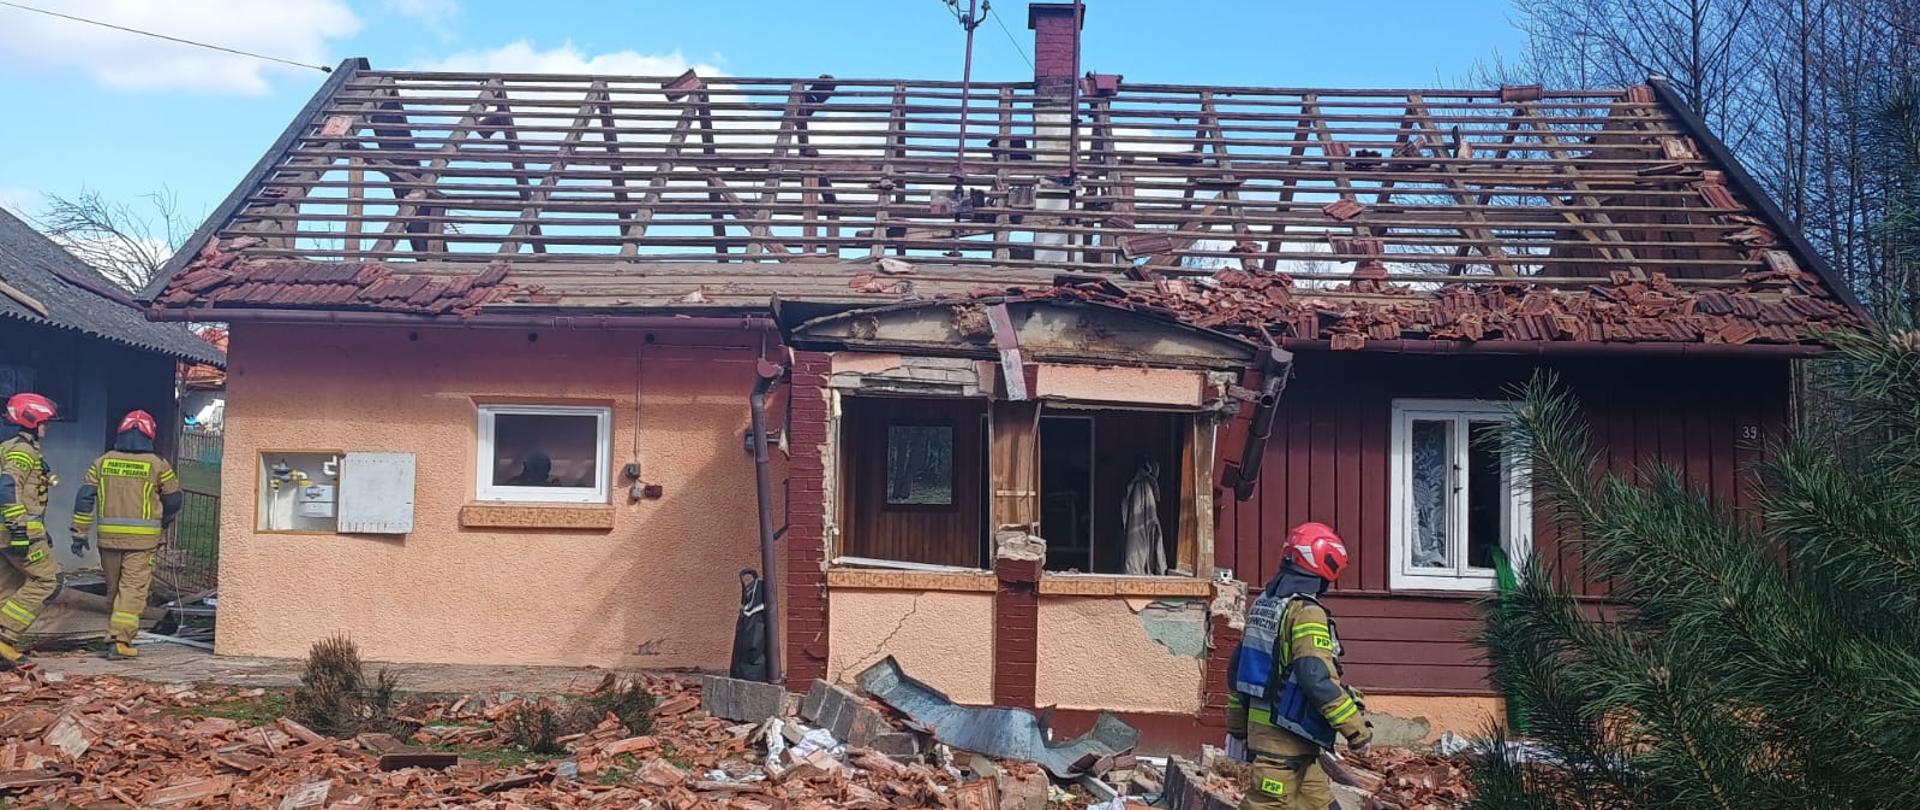 Dom z uszkodzonym dachem i gankiem, po lewej stronie strażak w ubraniu specjalnym, w tle z lewej strony 2 strażaków i budynek gospodarczy